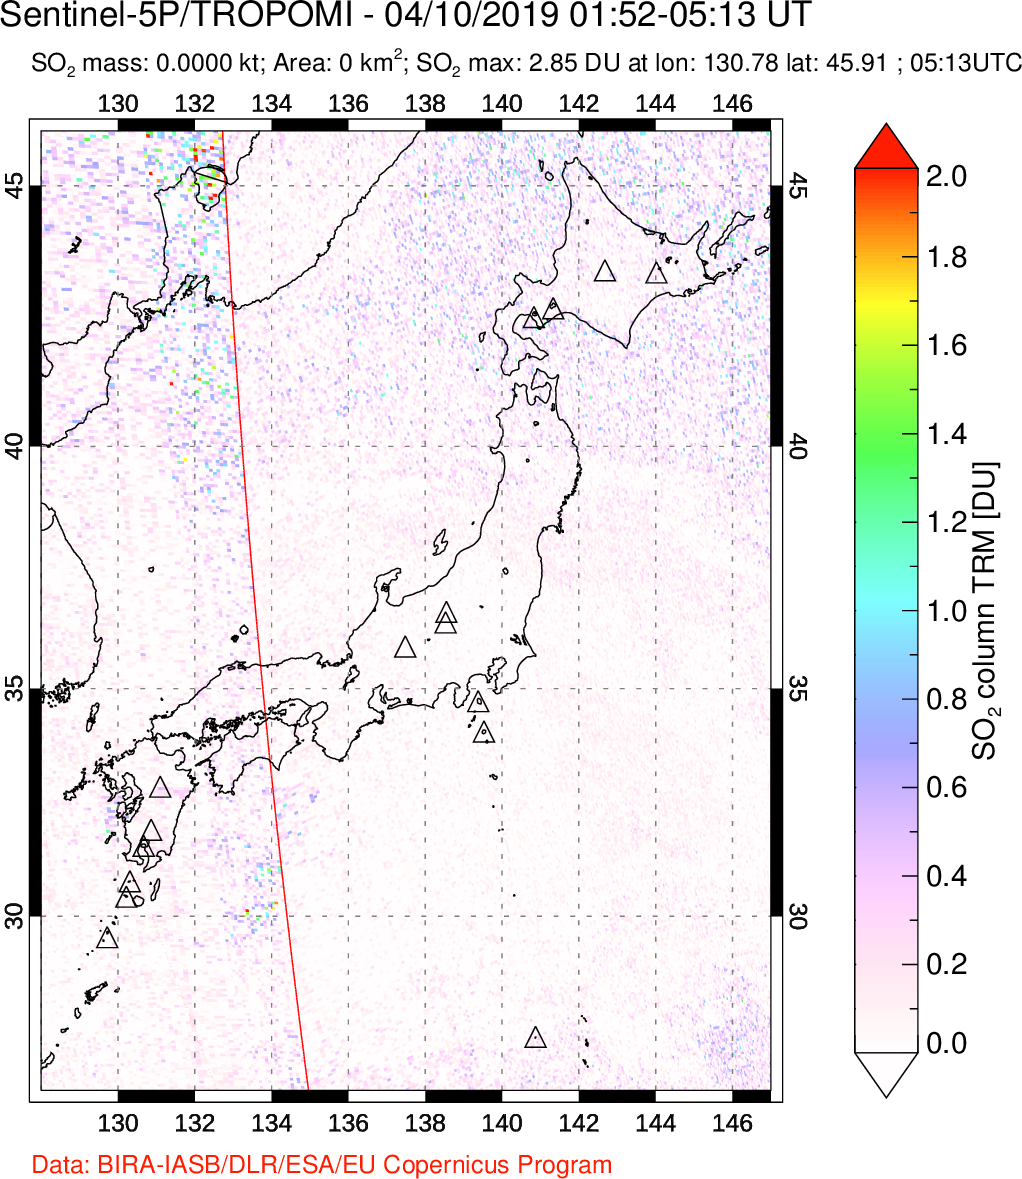 A sulfur dioxide image over Japan on Apr 10, 2019.